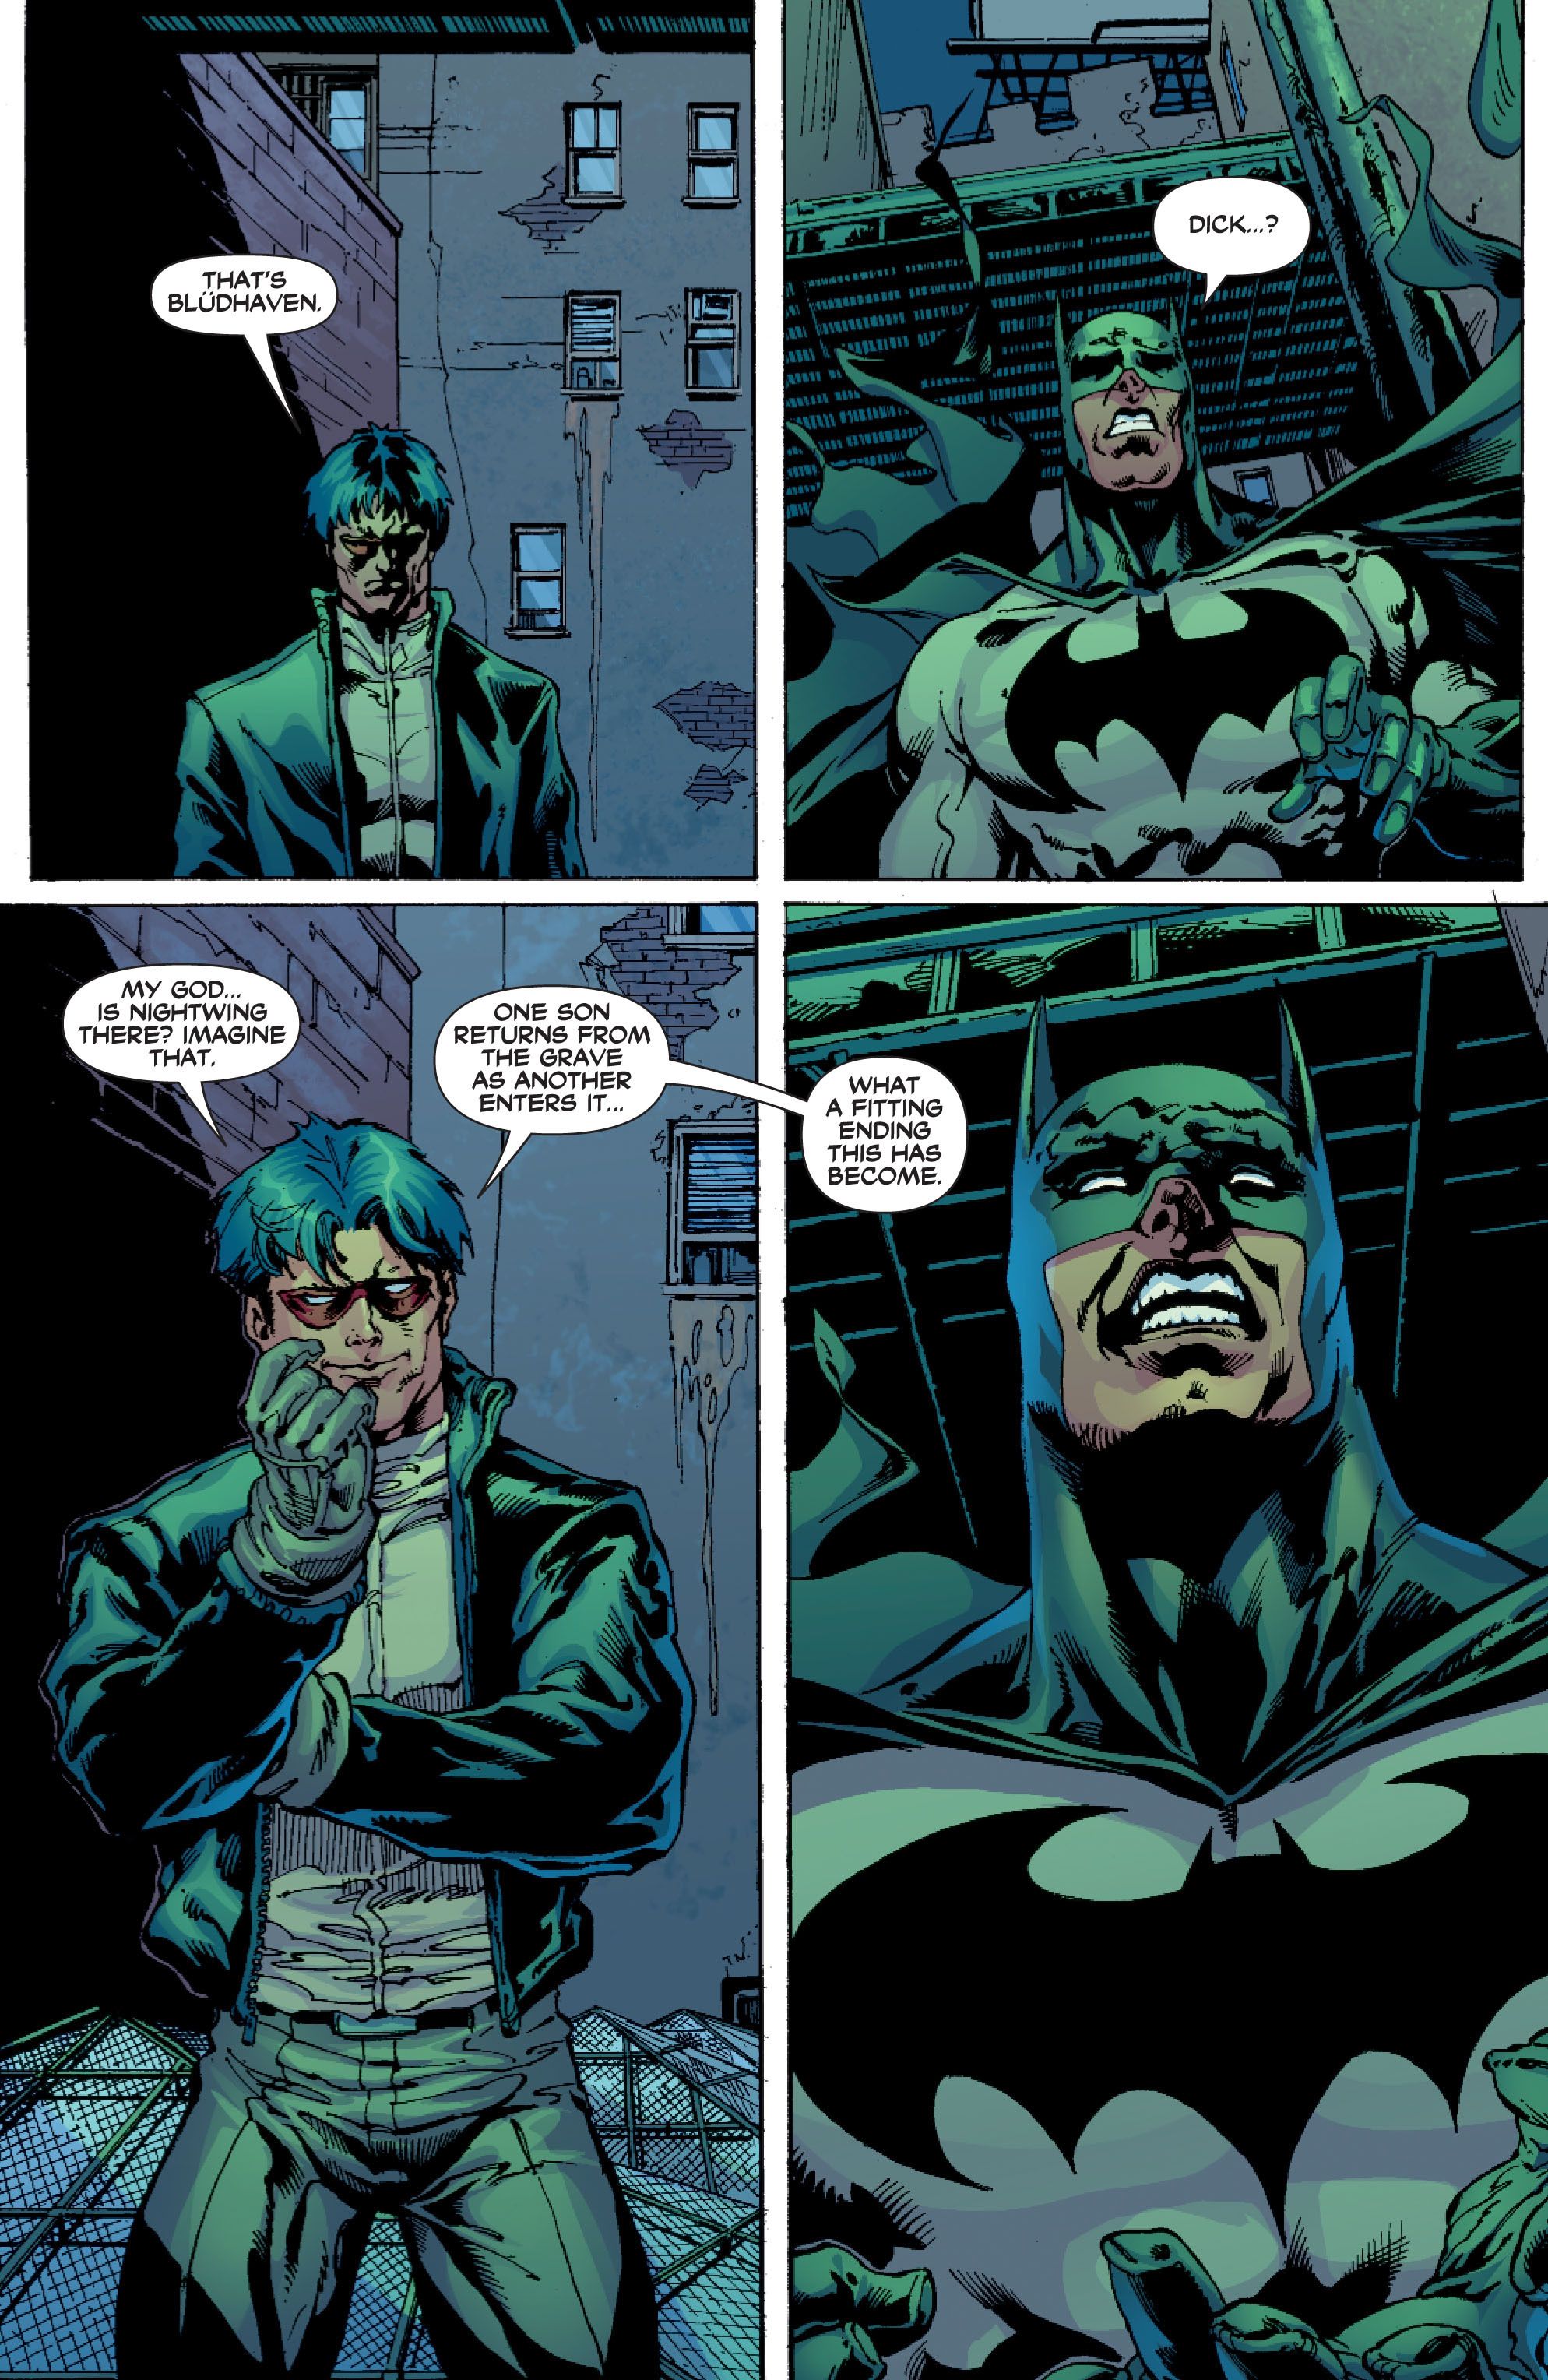 the old batman comics read online